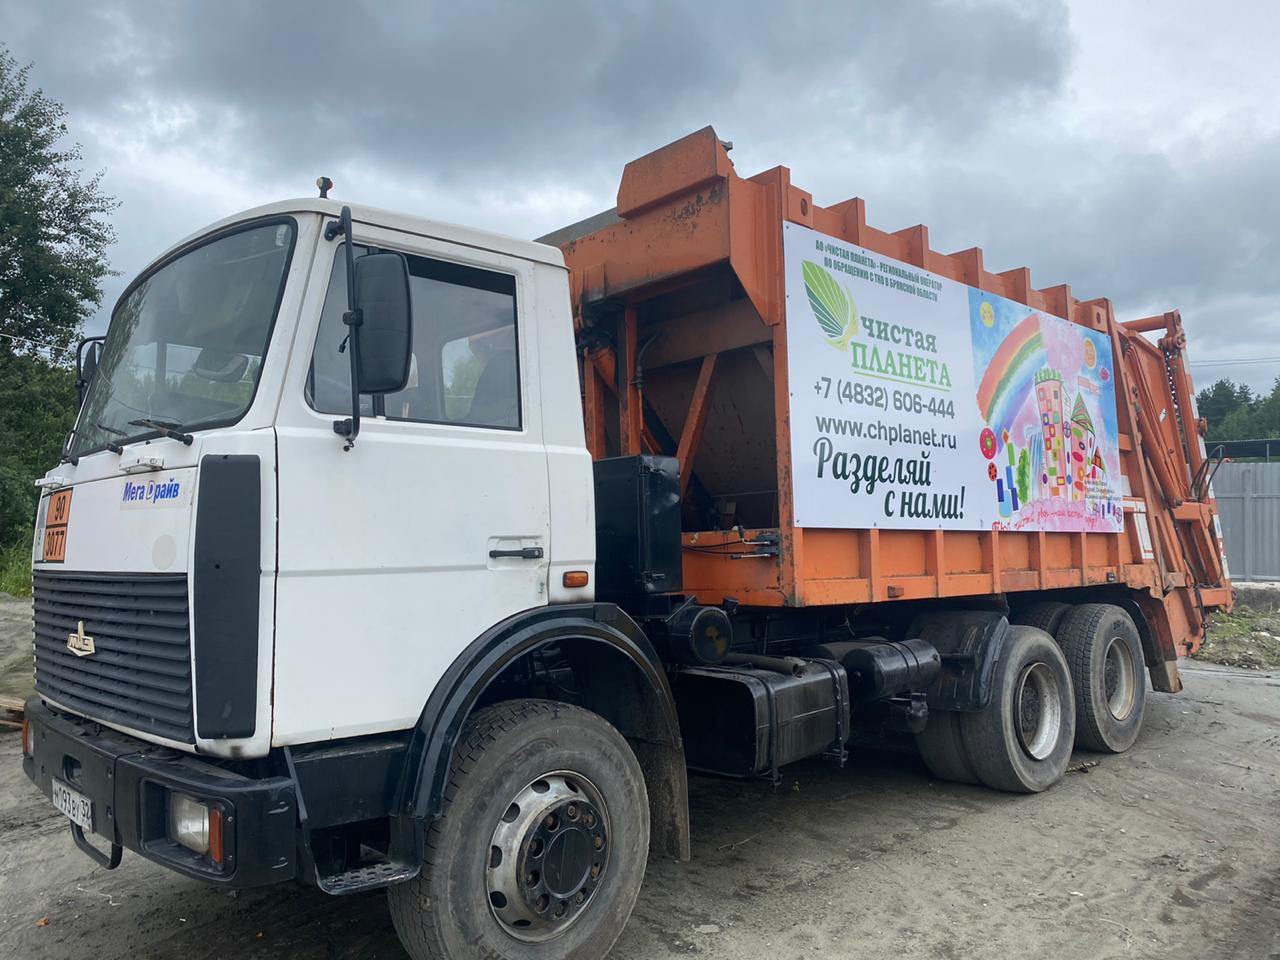 Рисунки детей украсили грузовики для вывоза мусора в Брянской области